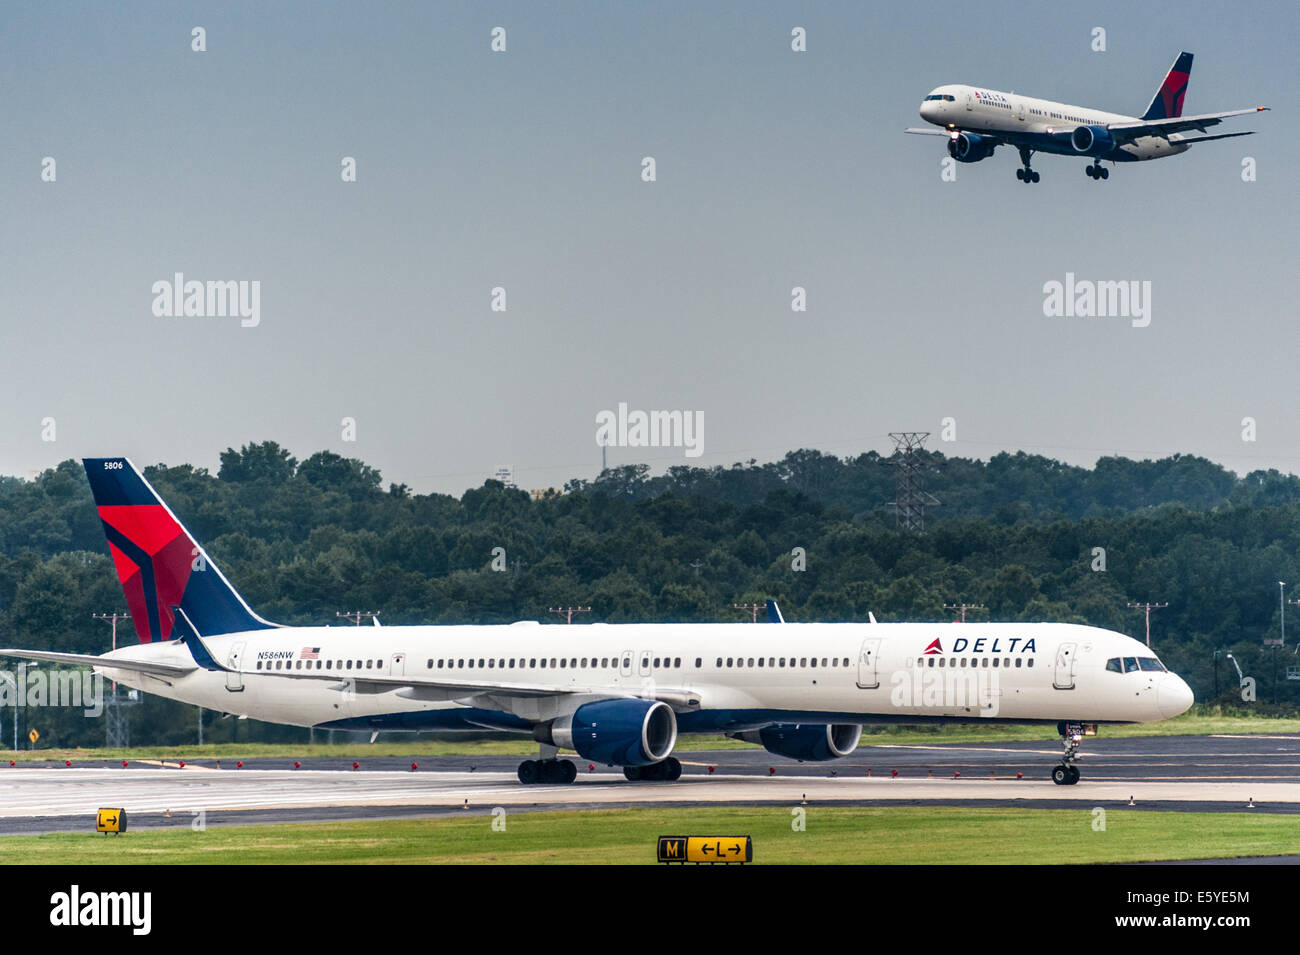 Delta Airlines getti in arrivo e in partenza all'Aeroporto Internazionale Hartsfield-Jackson di Atlanta, il mondo aeroporto più trafficato. Stati Uniti d'America Foto Stock